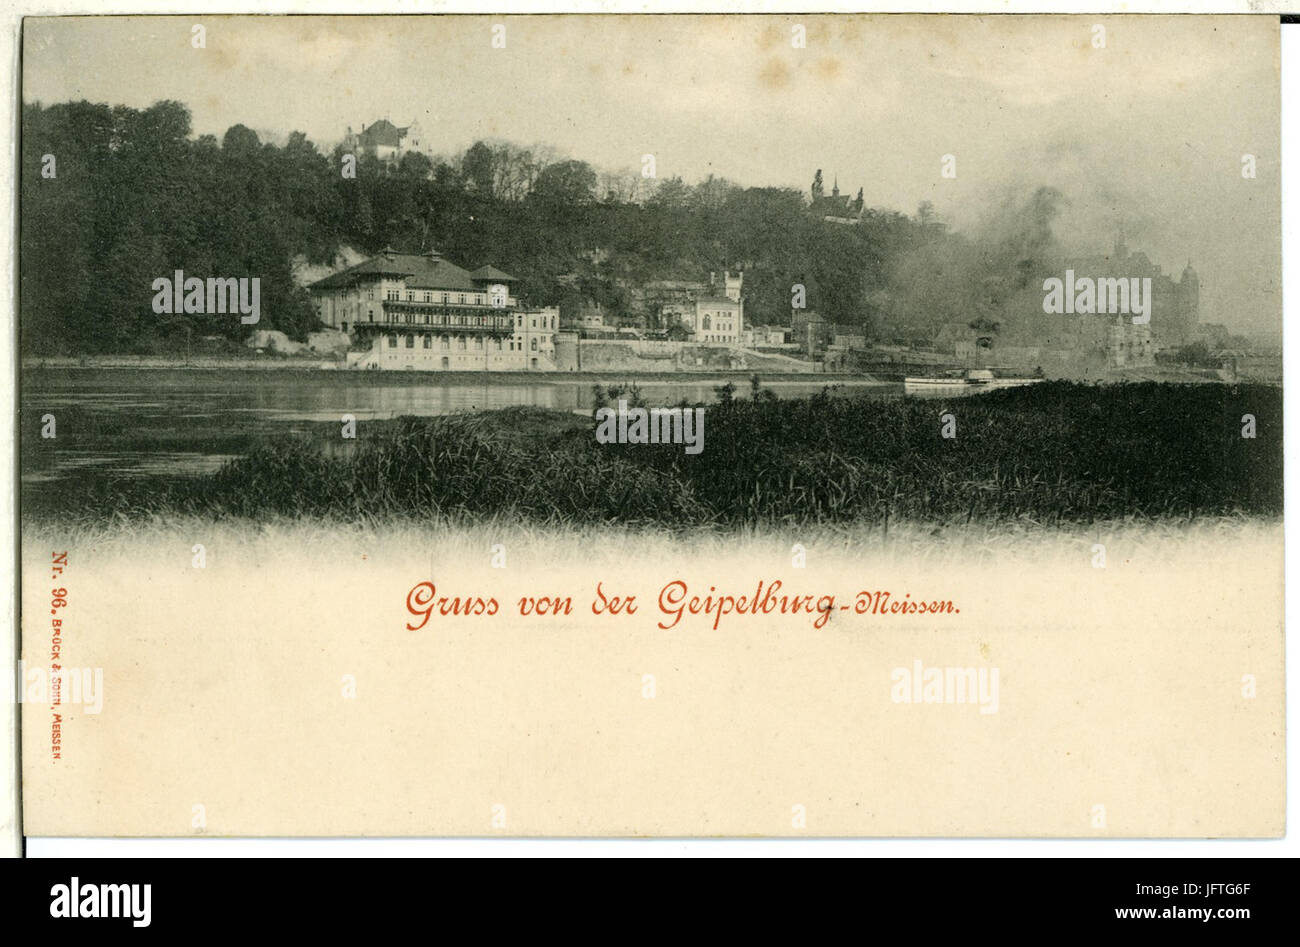 00096-Meißen-1898-Geipelburg-Brück & Sohn Kunstverlag Stockfoto